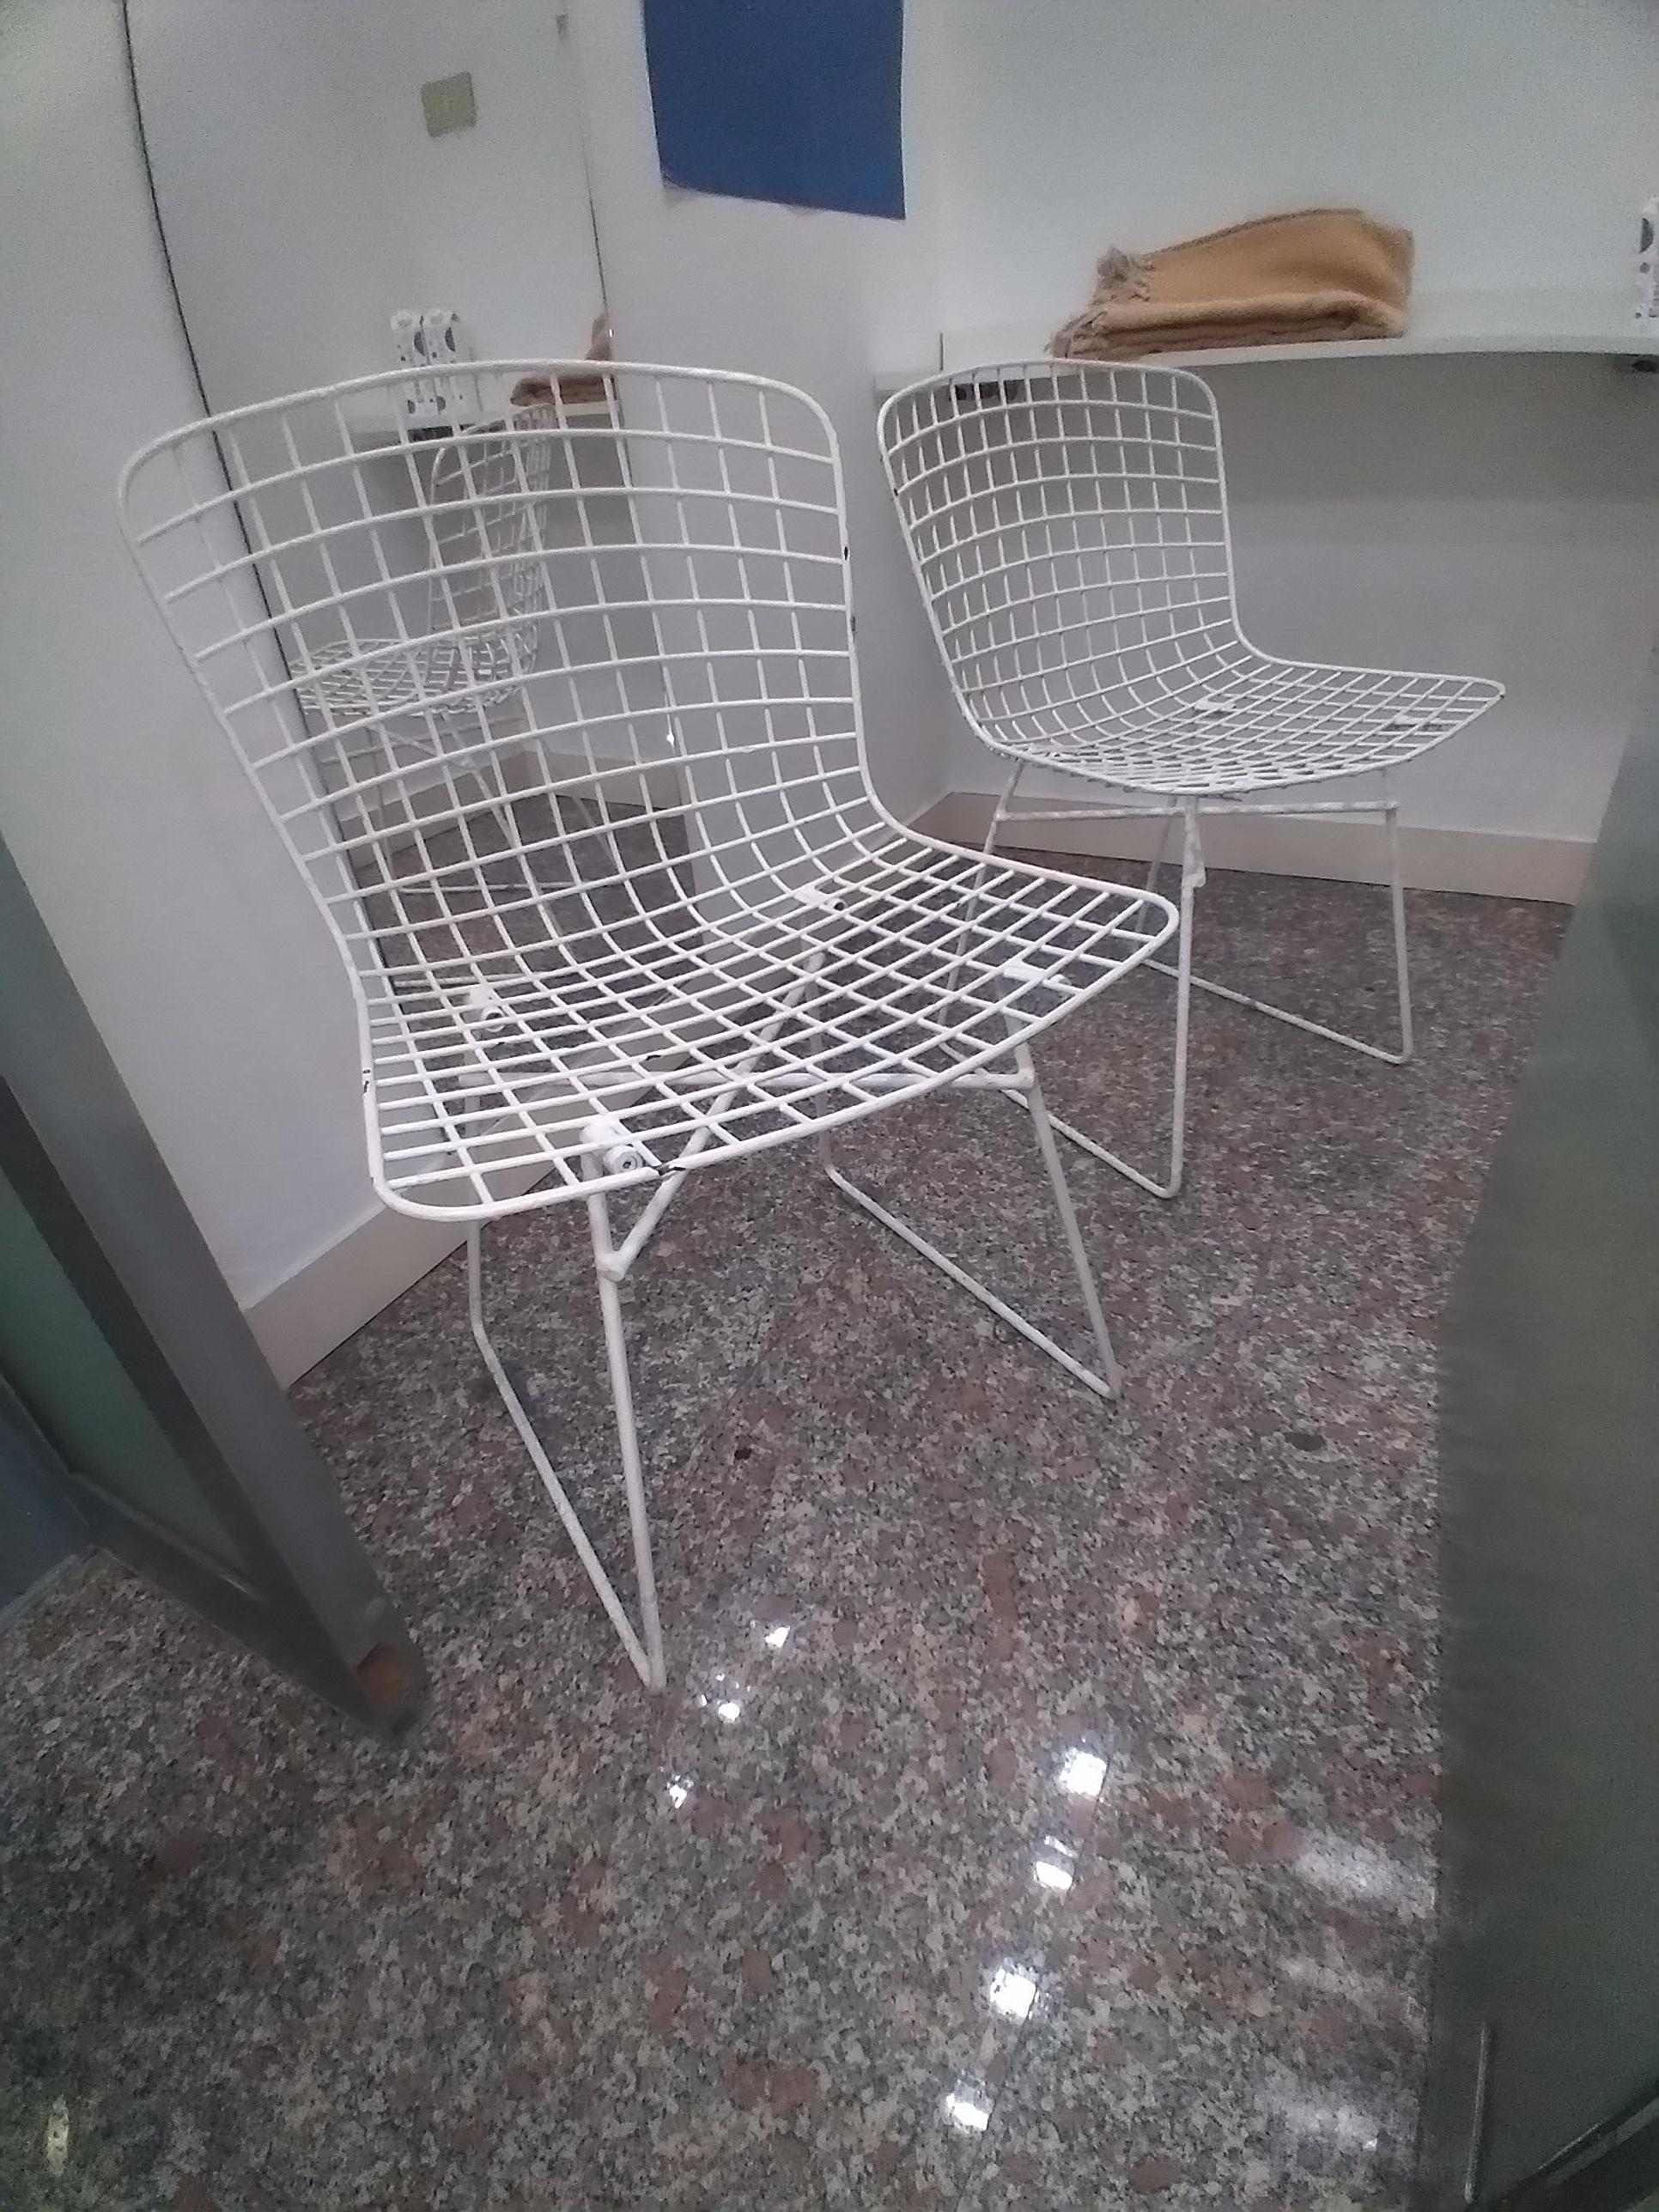 Harry Bertoia 2 Stühle 1960 .Diese Art von Stuhl von Architekt Harry Bertoia ist eine Ikone des dedign. diese zwei Stühle sind original und intakt .sie sind für jede Art von Umgebung geeignet .sie sind gut erhalten.